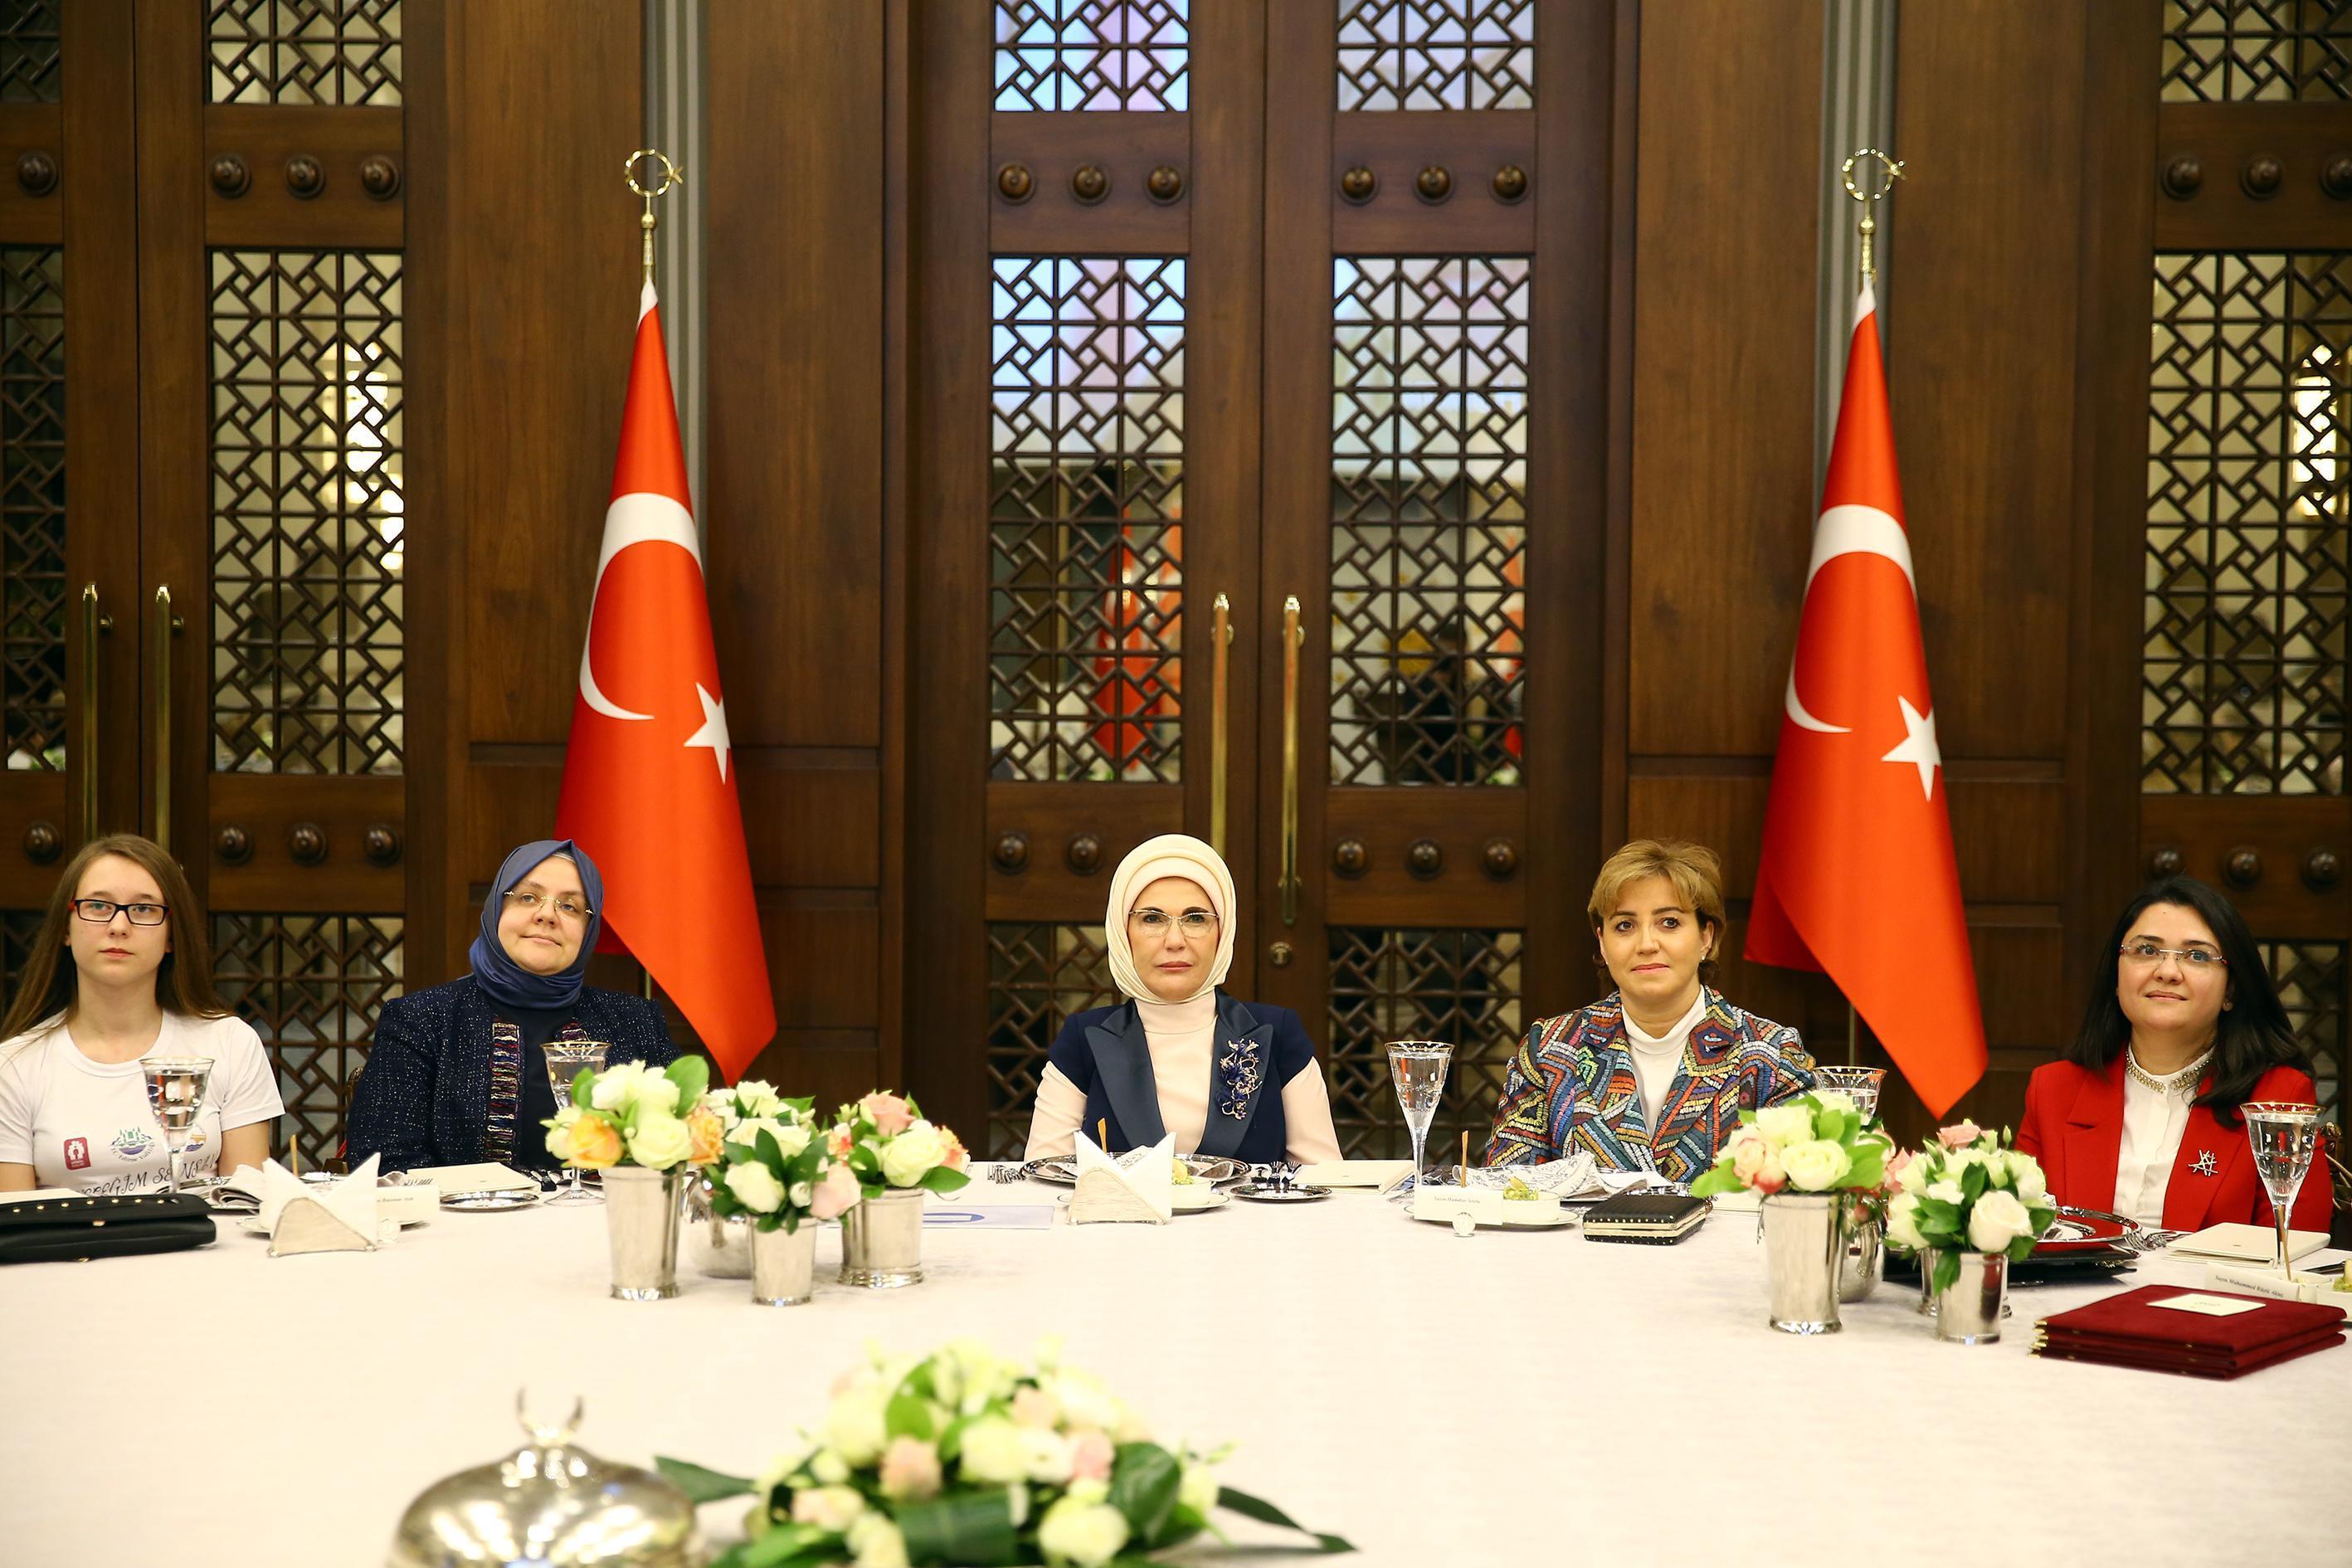 Emine Erdoğan, Gönül Elçileri Çocuk İşçiliği ile Mücadele programında konuştu